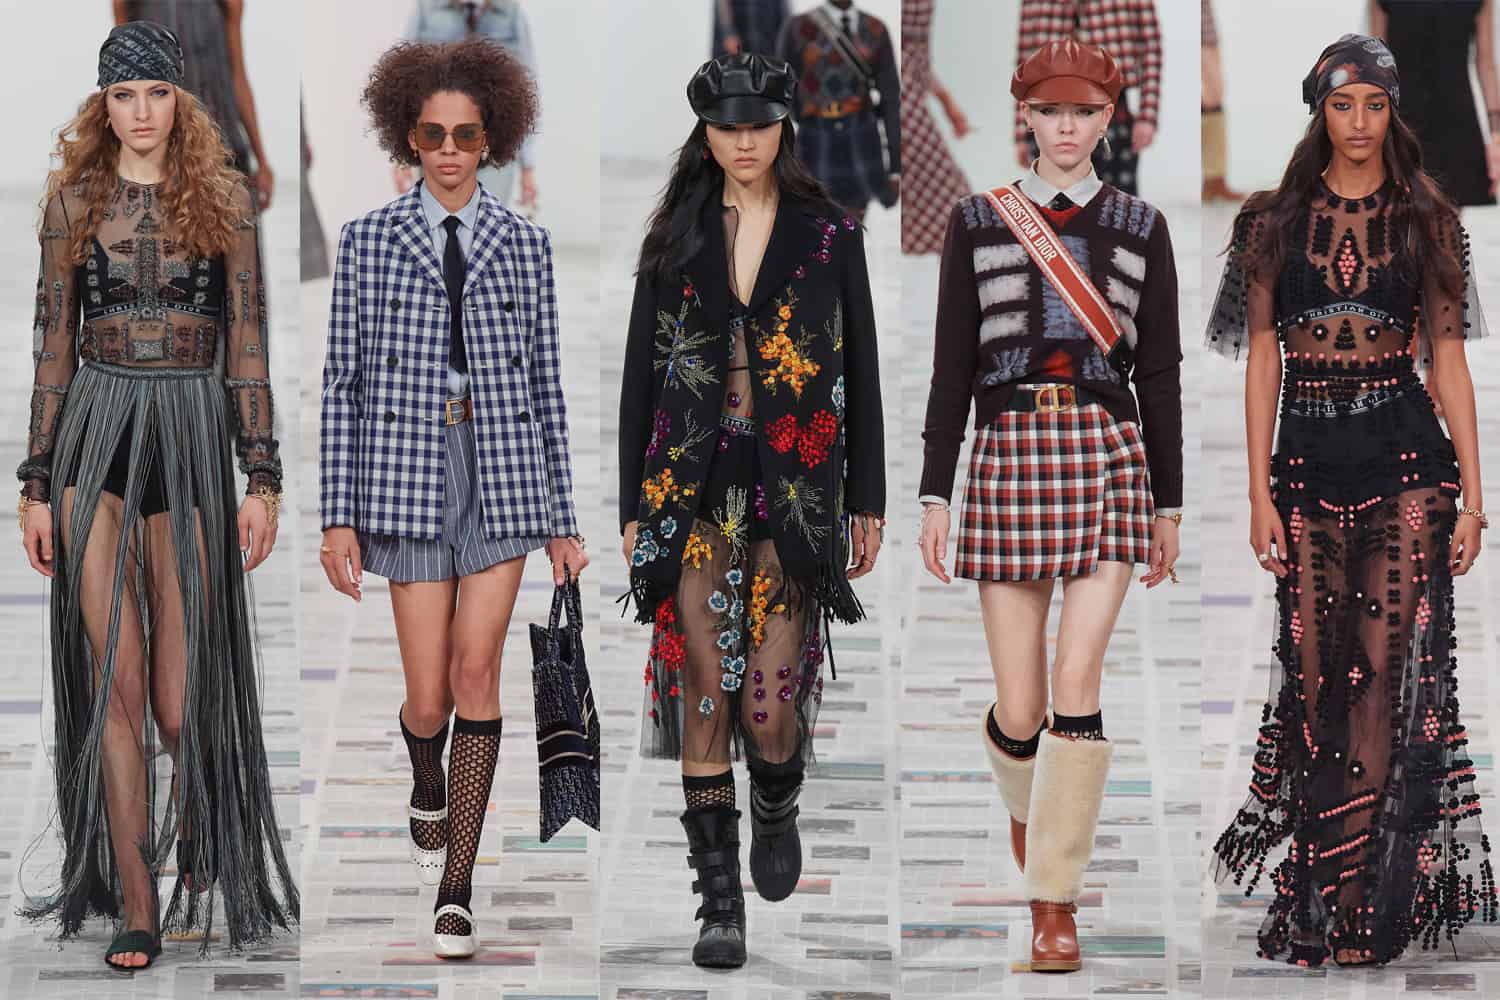 Christian Dior at Paris Fashion Week Fall 2020